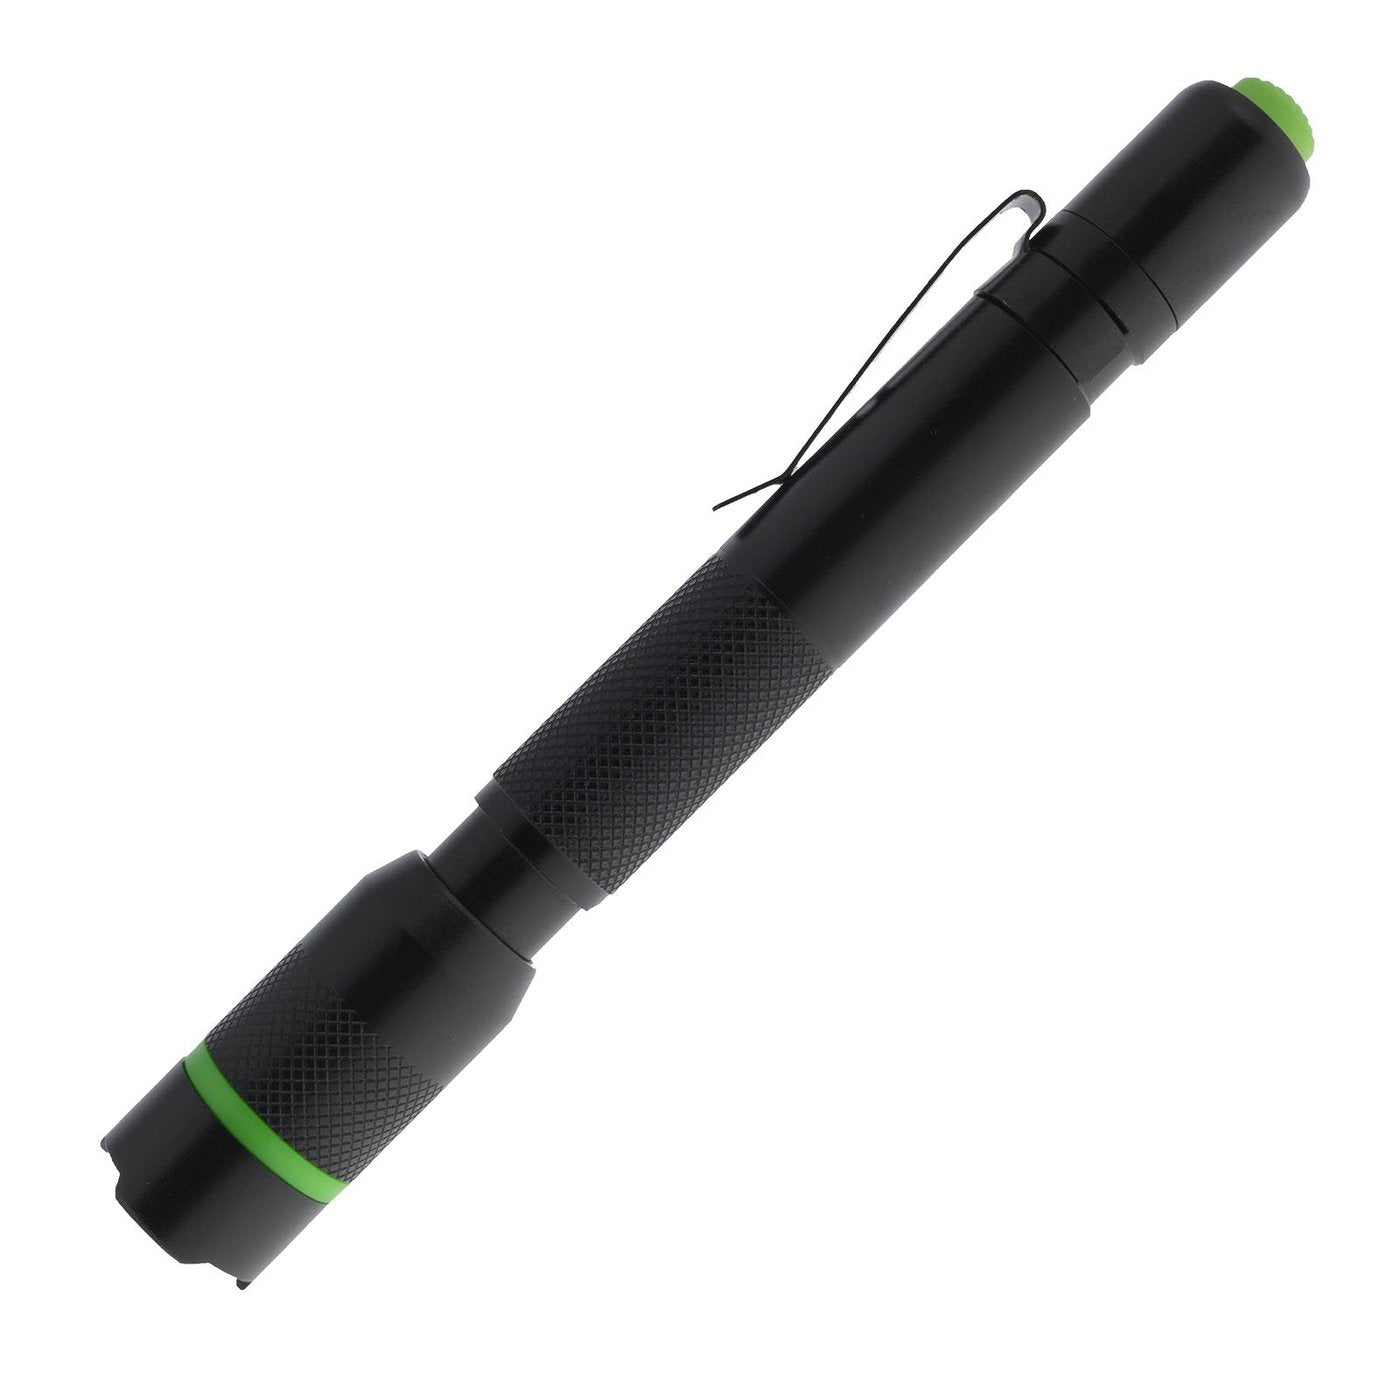 LitezAll | 250 Lumen Pen Light, Flashlight, LitezAll, Defiance Outdoor Gear Co.